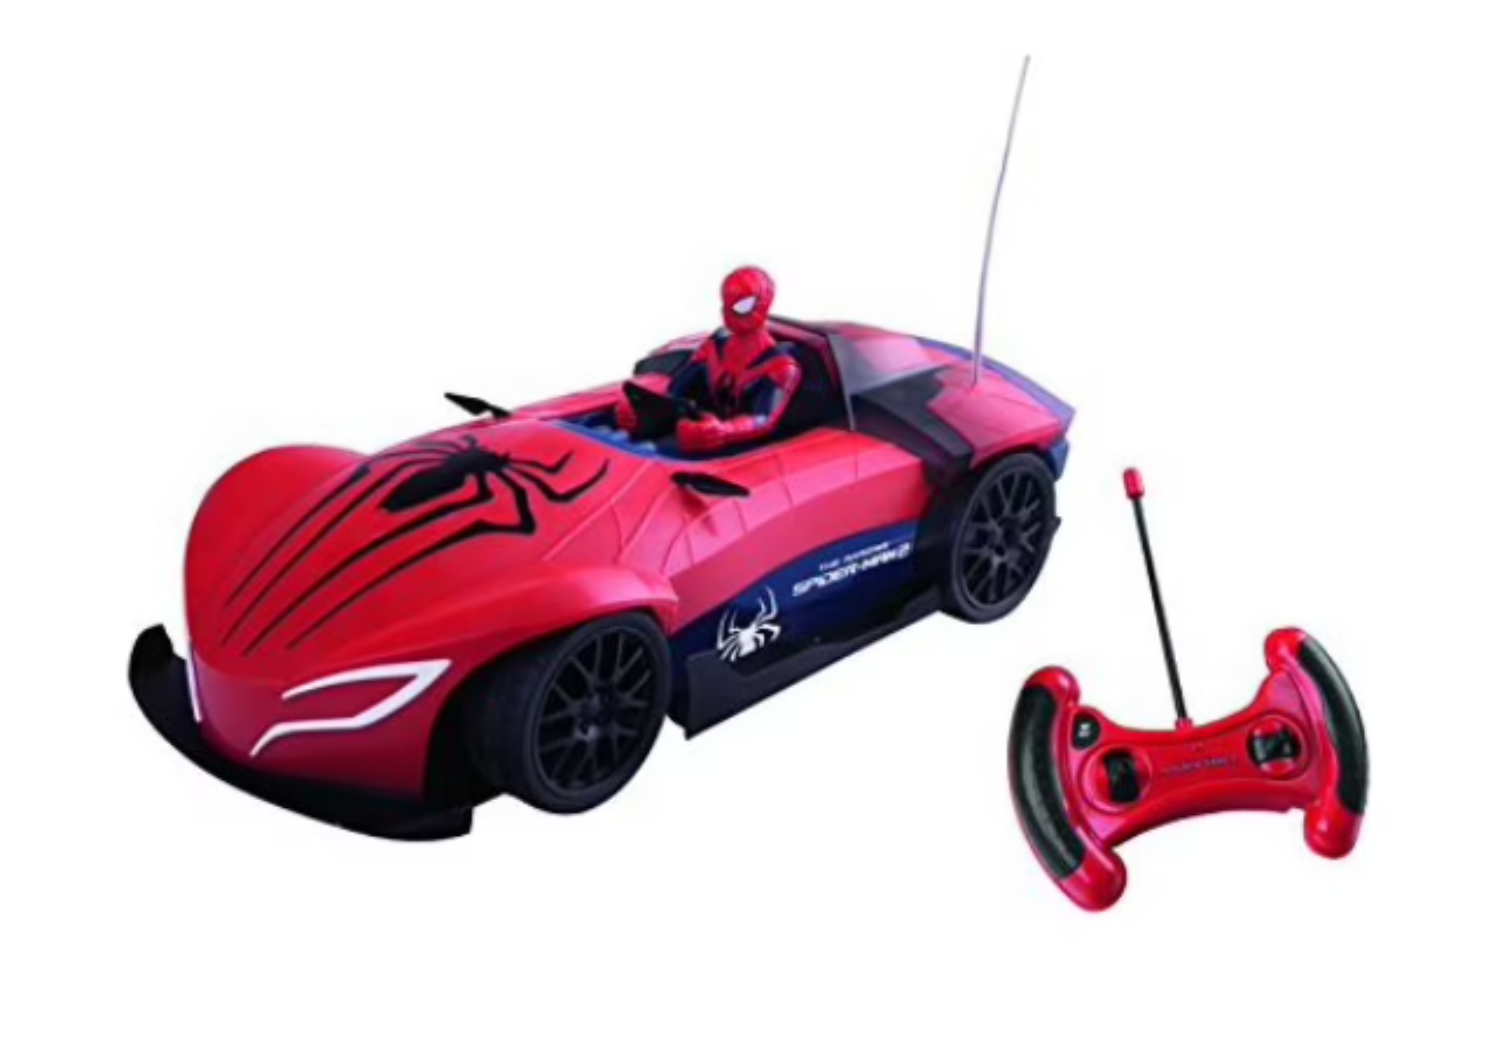 Notre avis sur la voiture télécommandée Spiderman